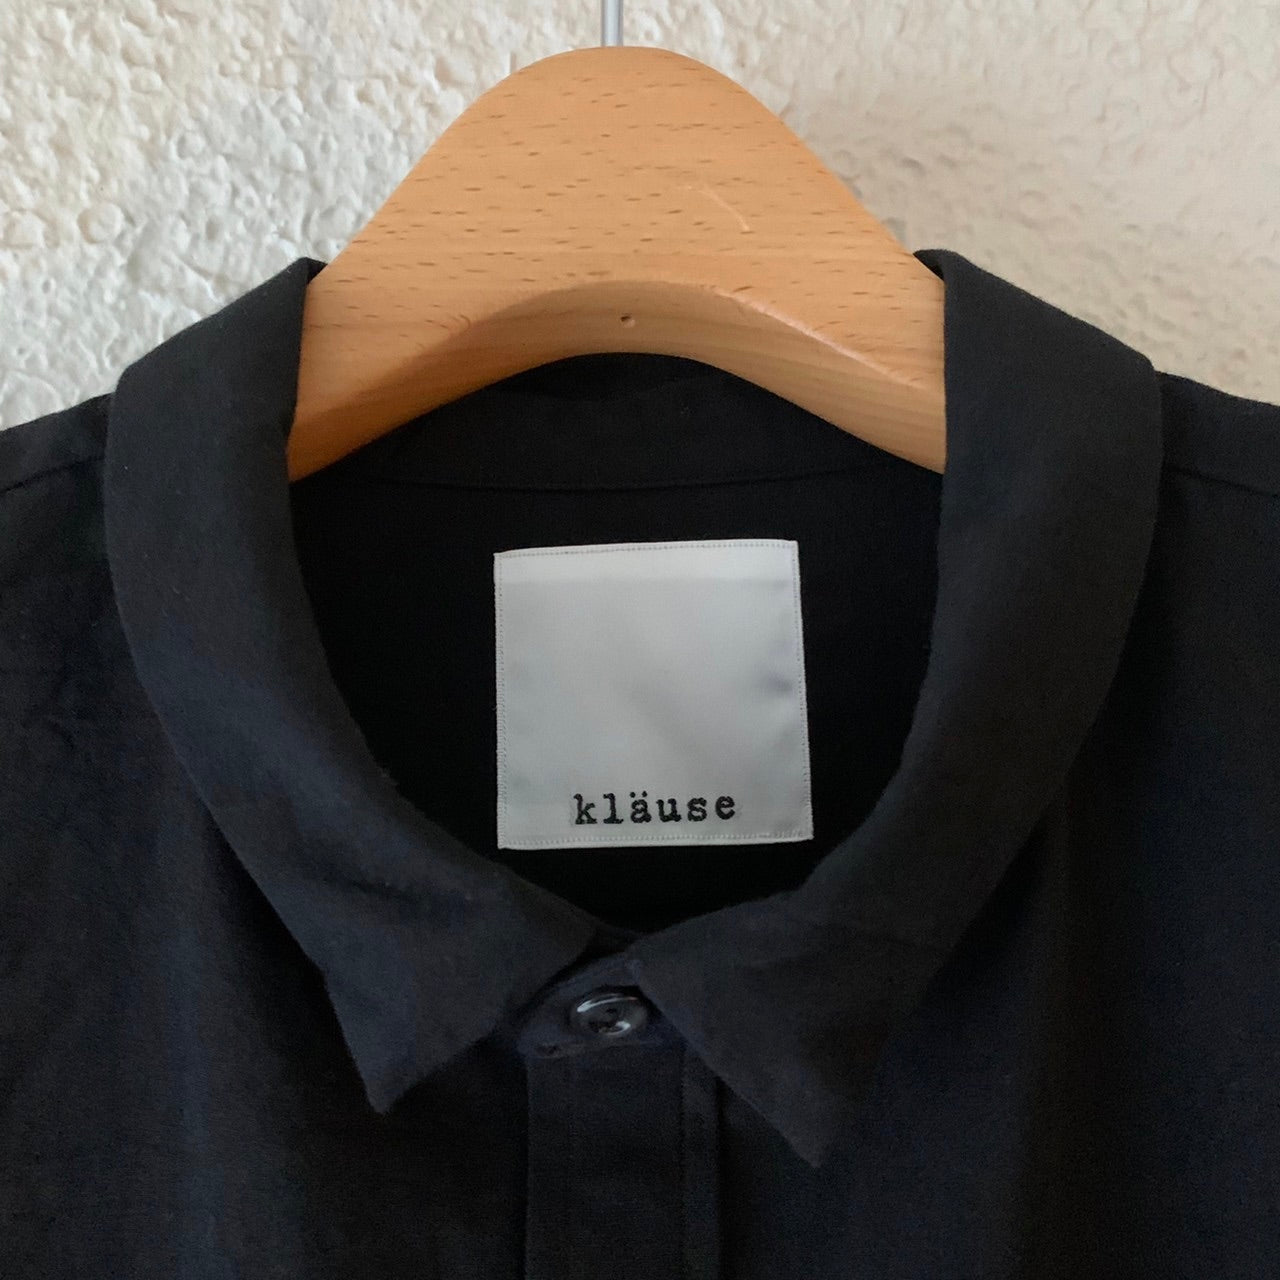 klause |クロイゼ | L-S B.D Shirts | Black